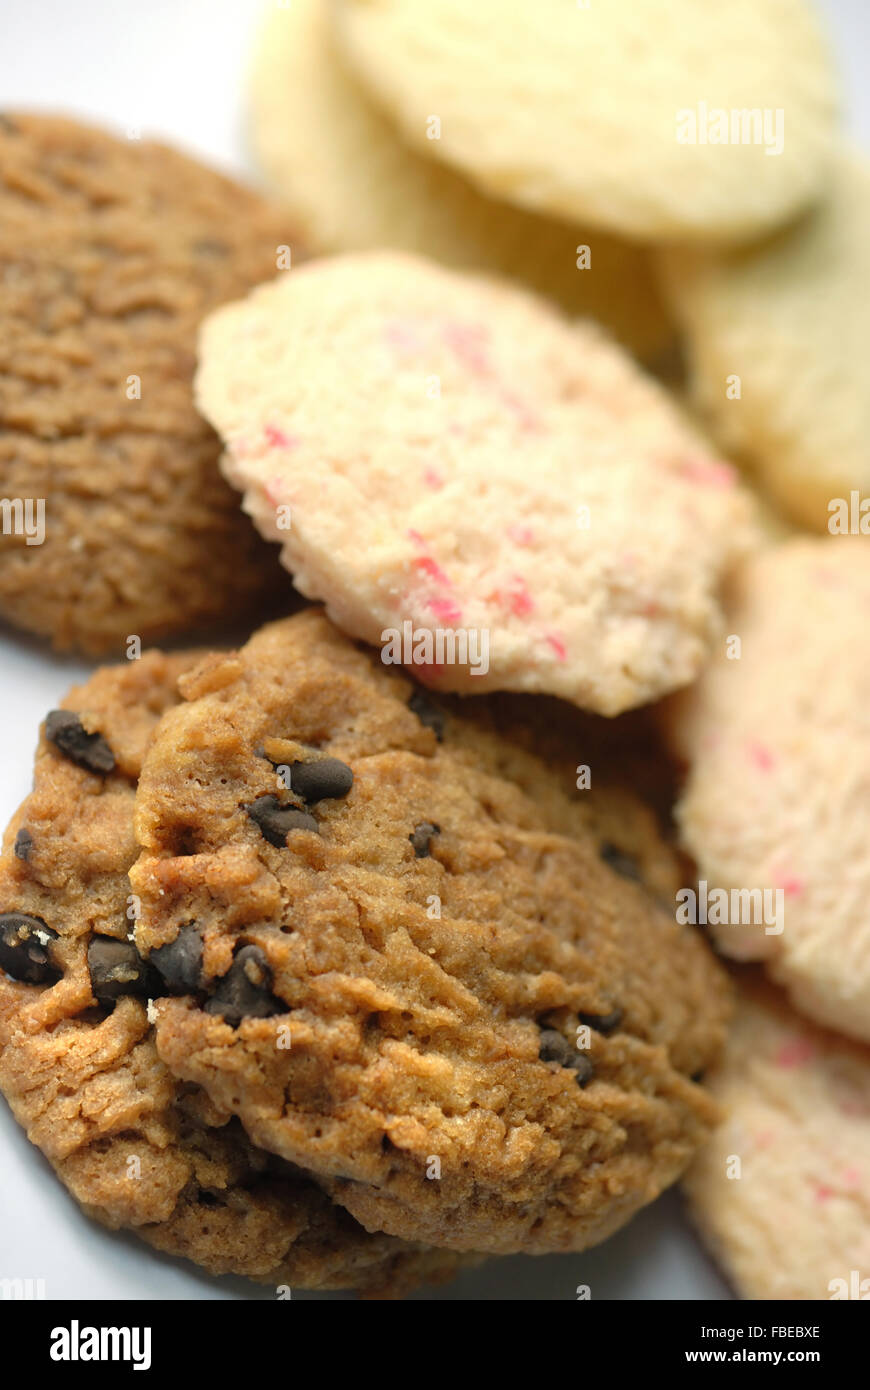 Cookies / Biscuits Stock Photo